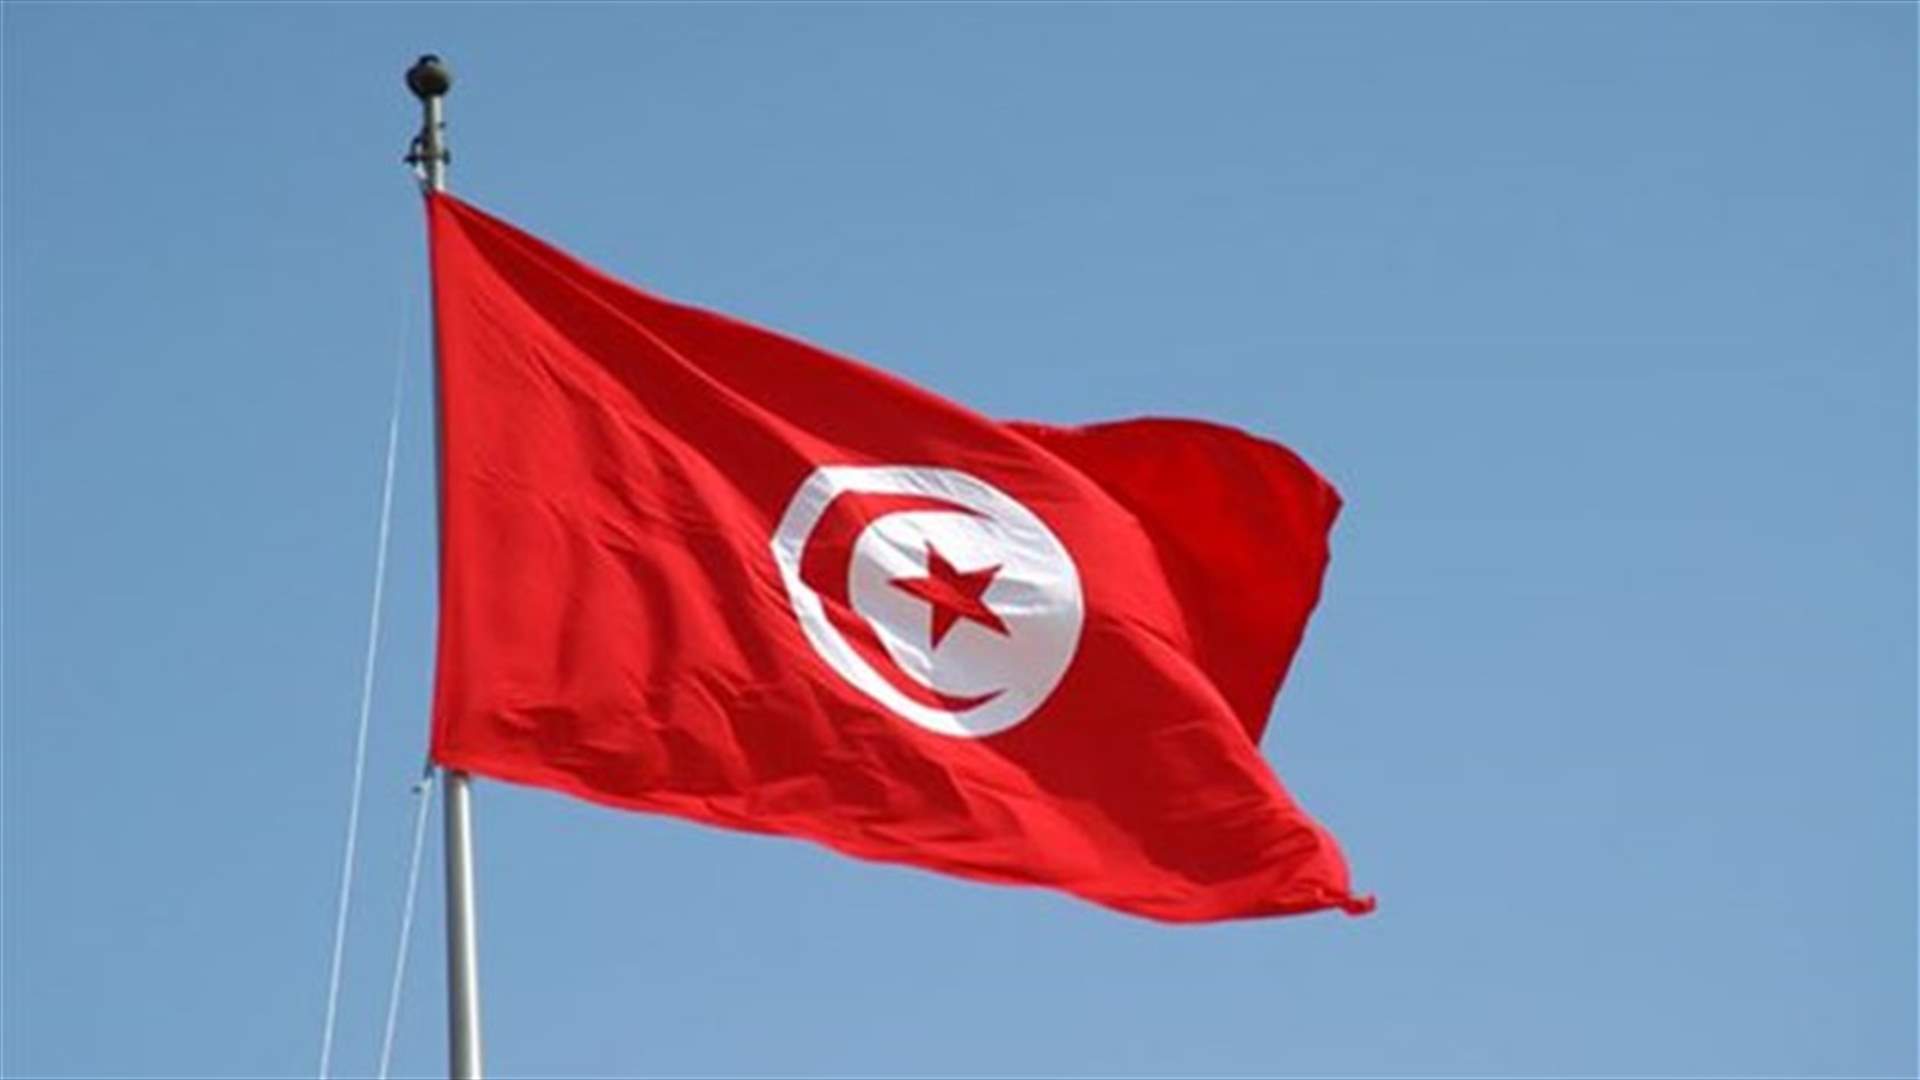 اعلان حال الطوارئ في تونس بعد أسبوع من هجوم سوسة